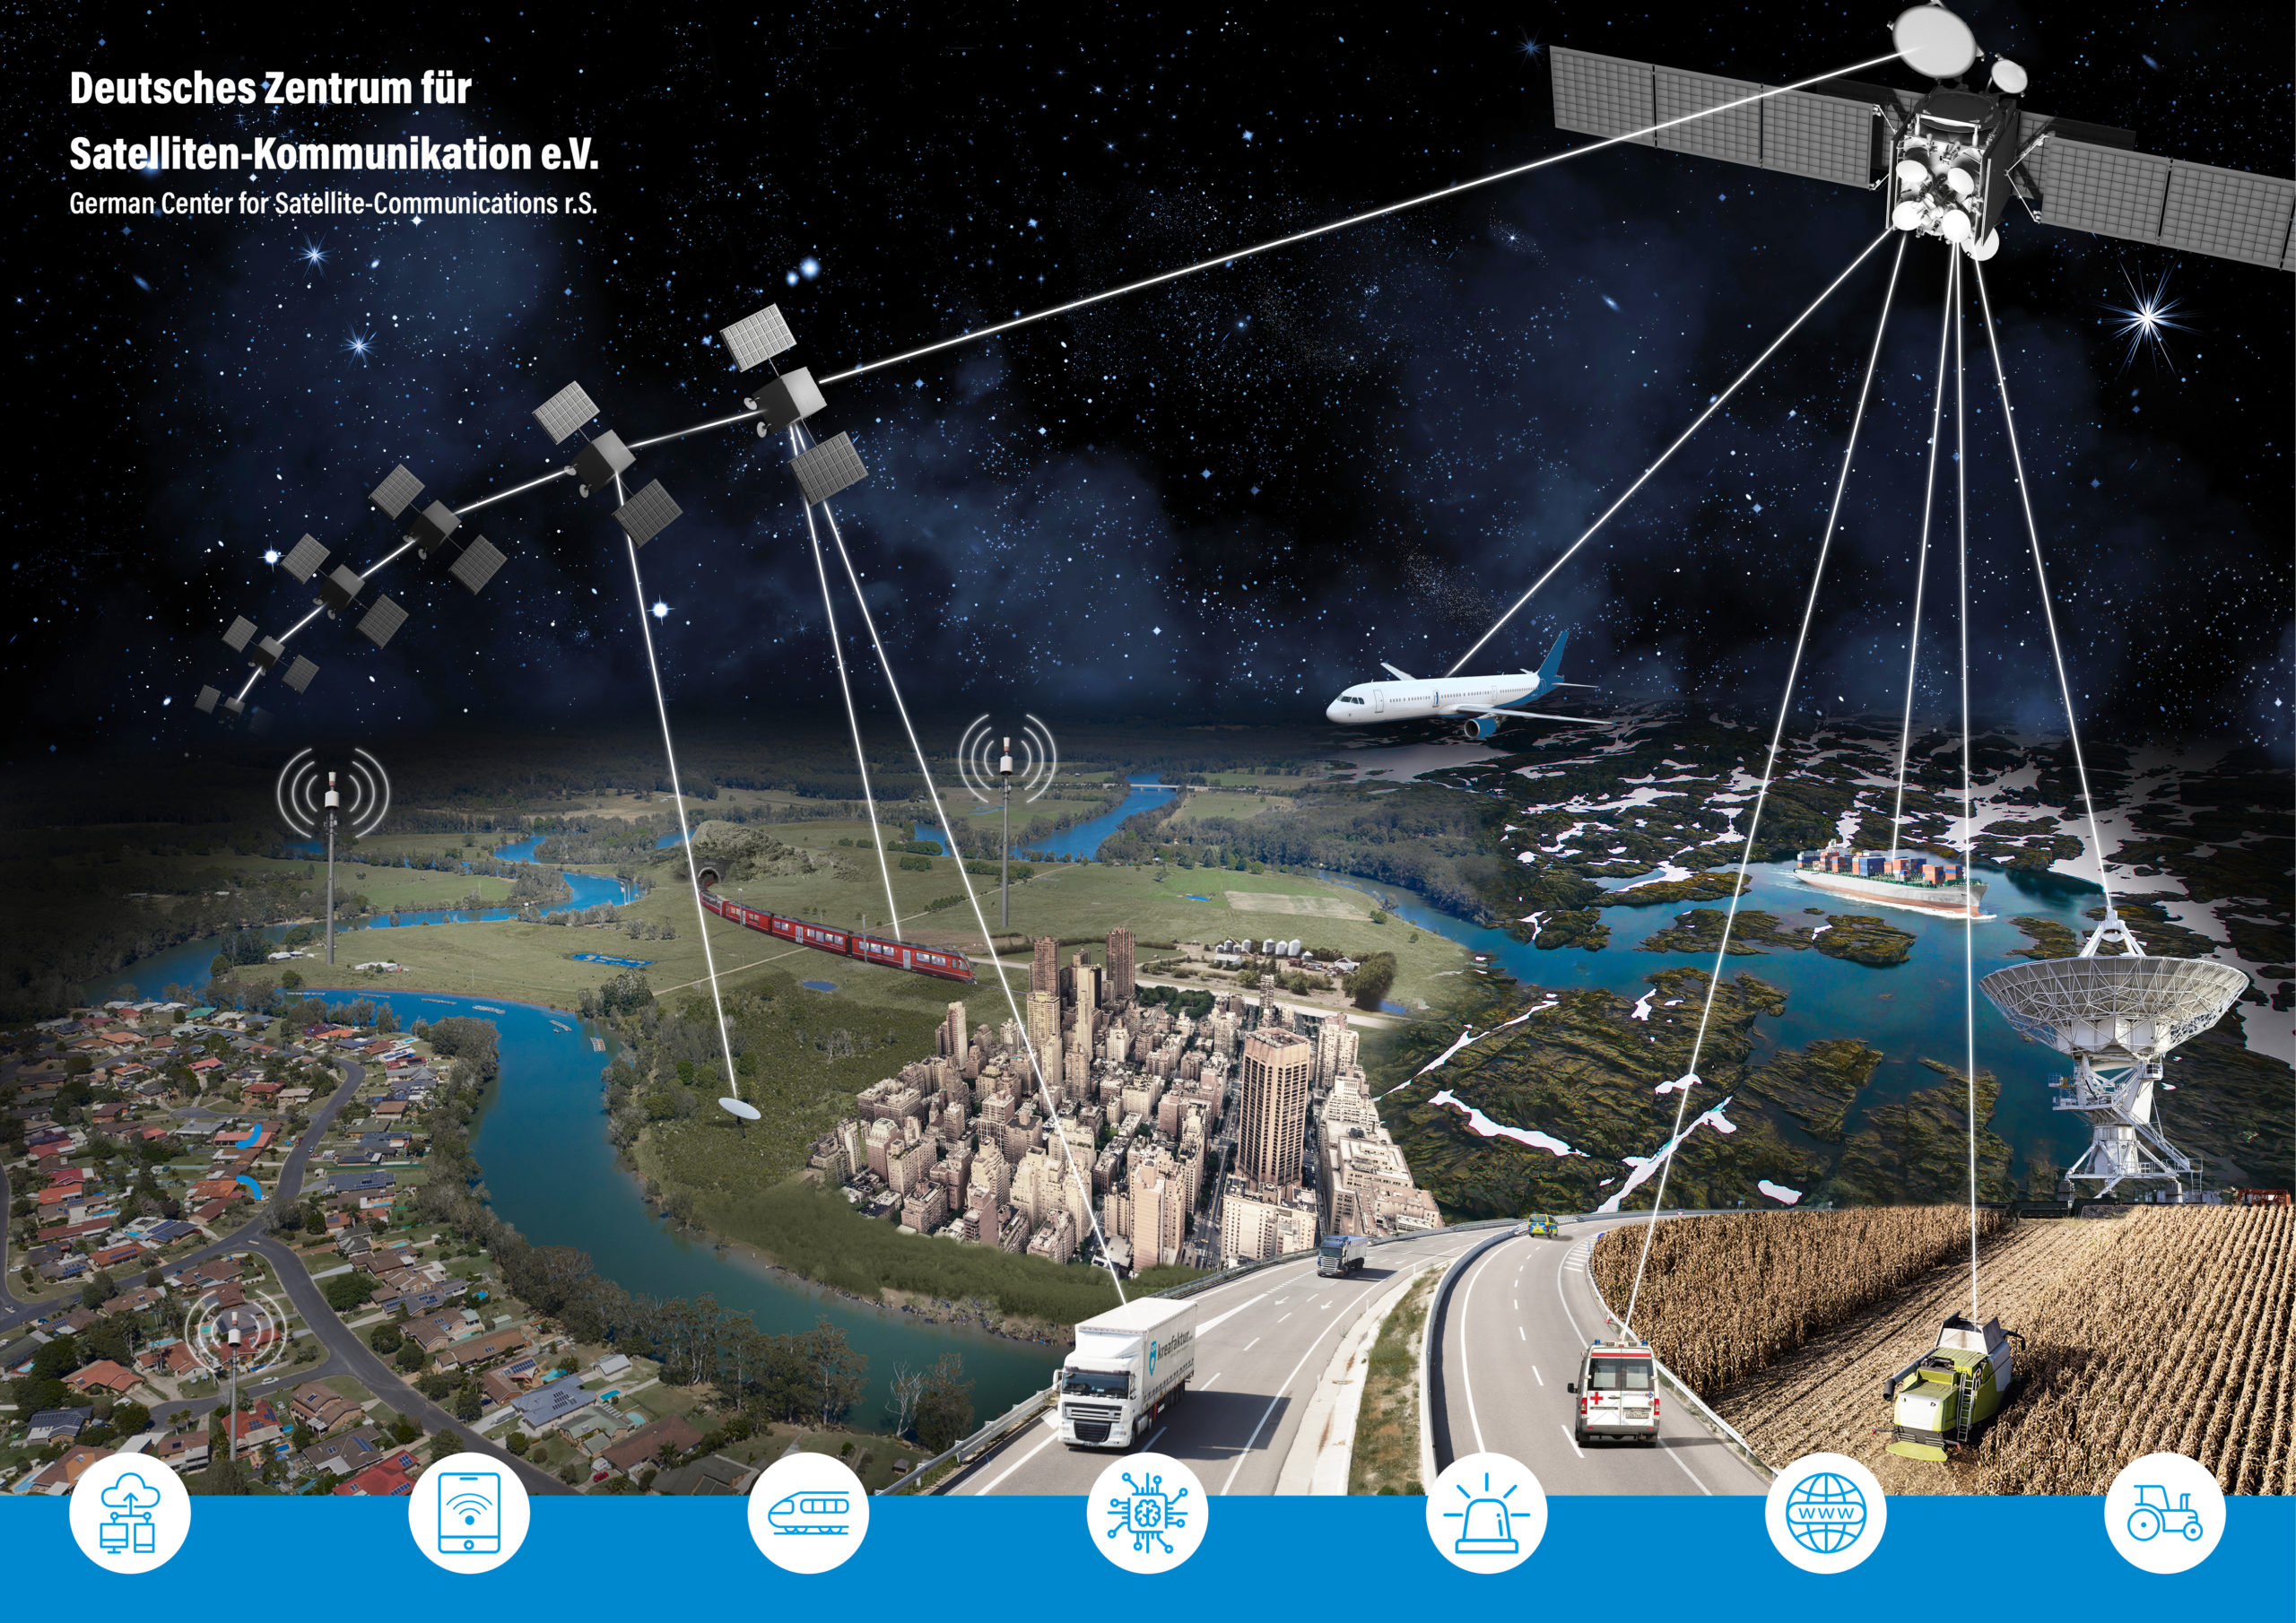 Netzwerk Deutsche Zentrum für Satelliten-Kommunikation